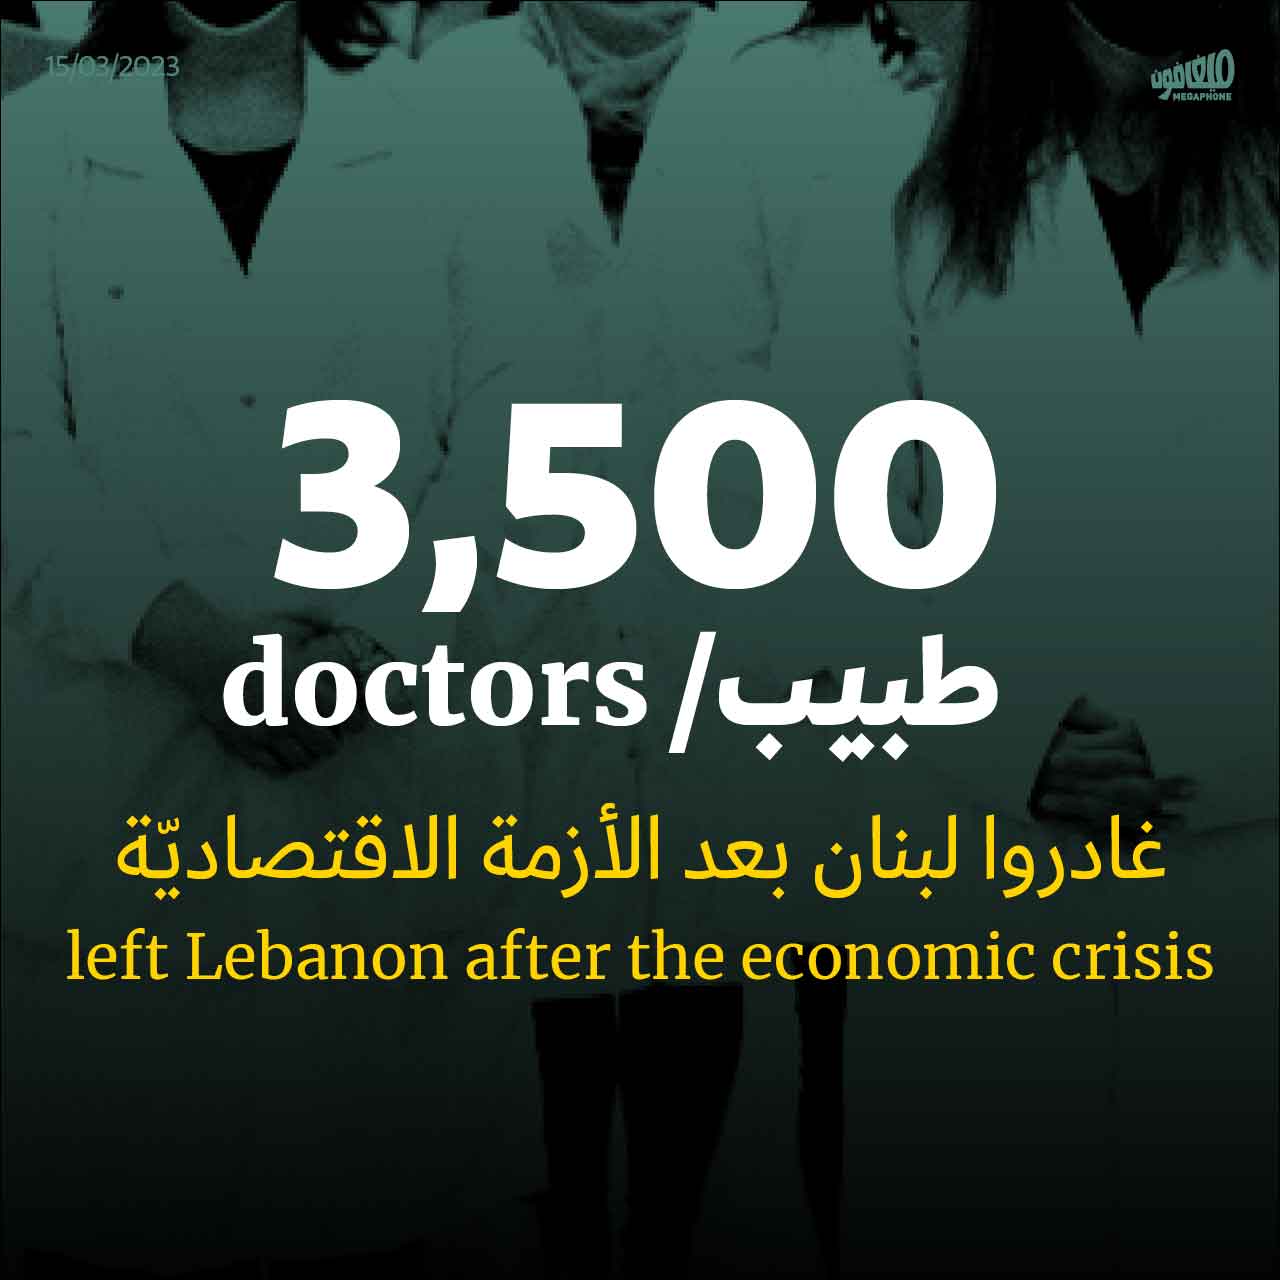 نقيب الأطباء: رُبعُ أطبّاء لبنان هاجروا 